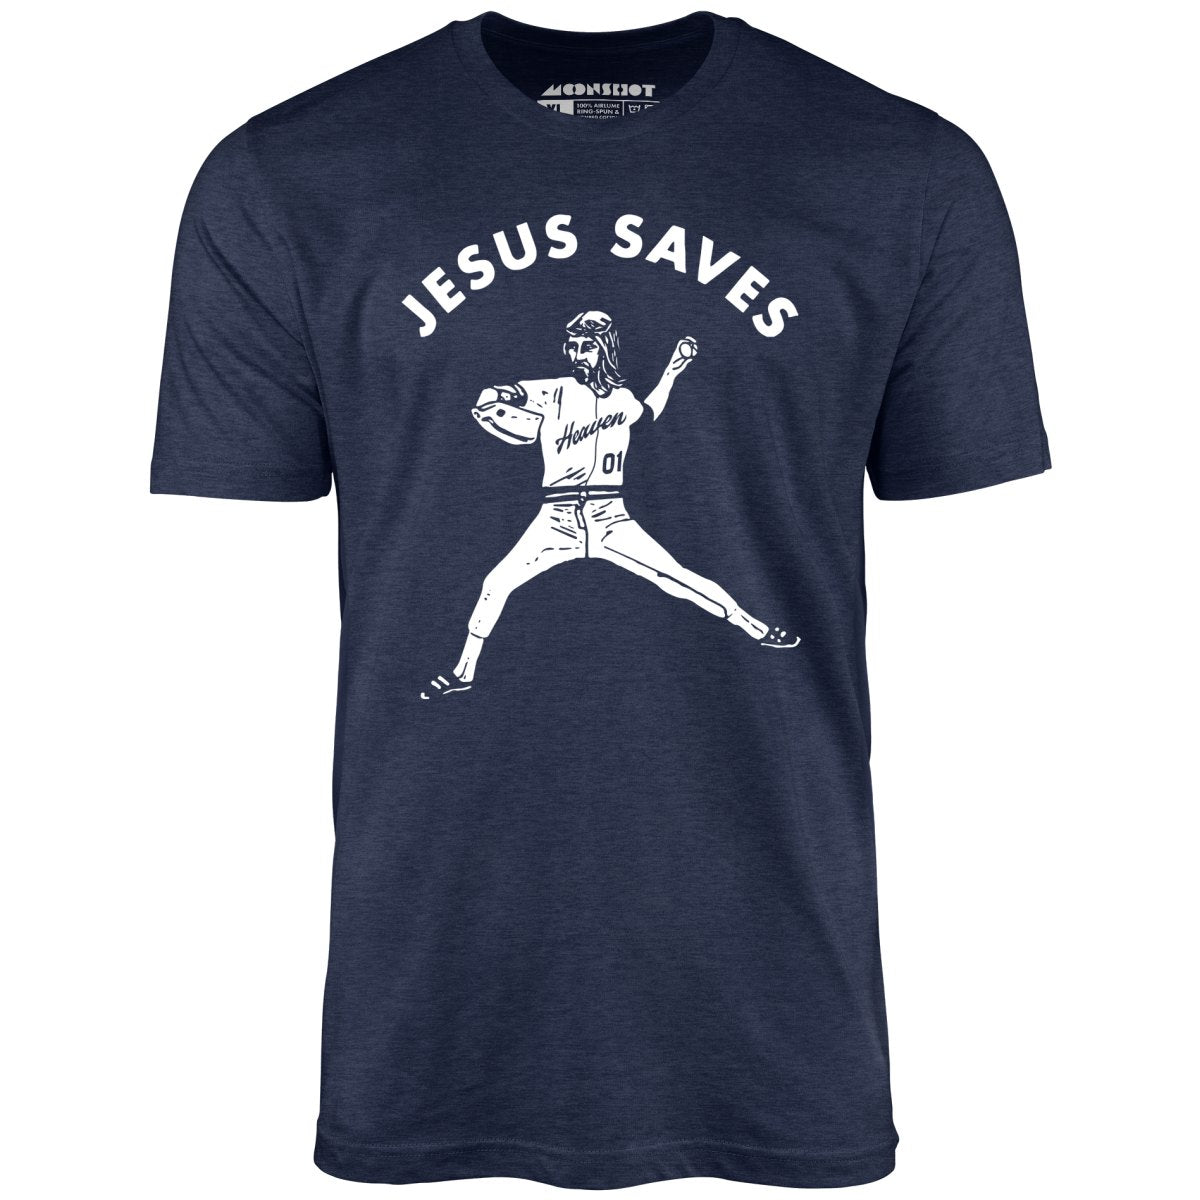 Jesus Saves - Lefty - Unisex T-Shirt